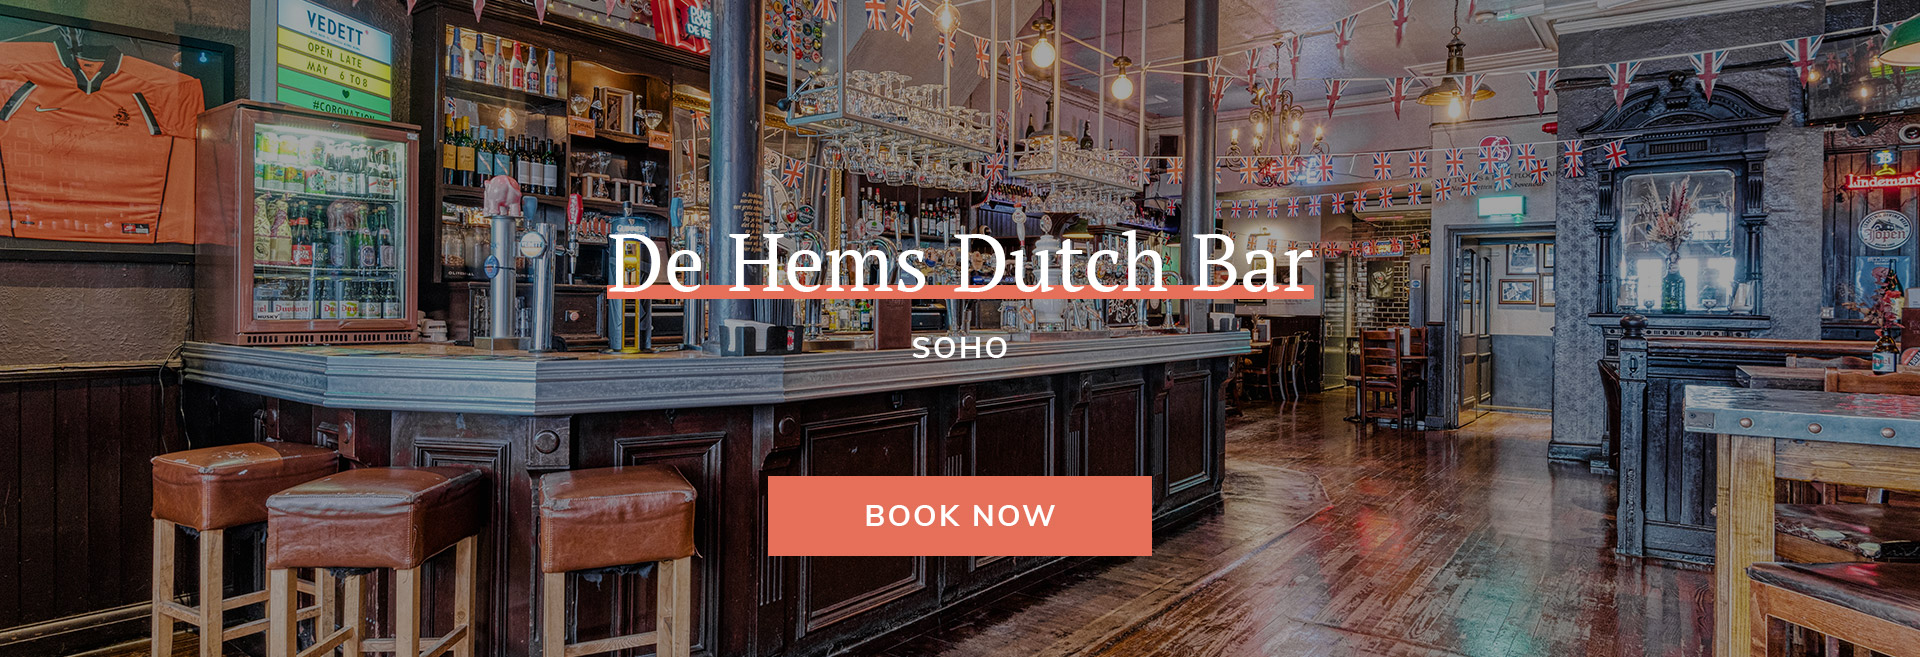 De Hems Dutch Cafe Bar Banner 3